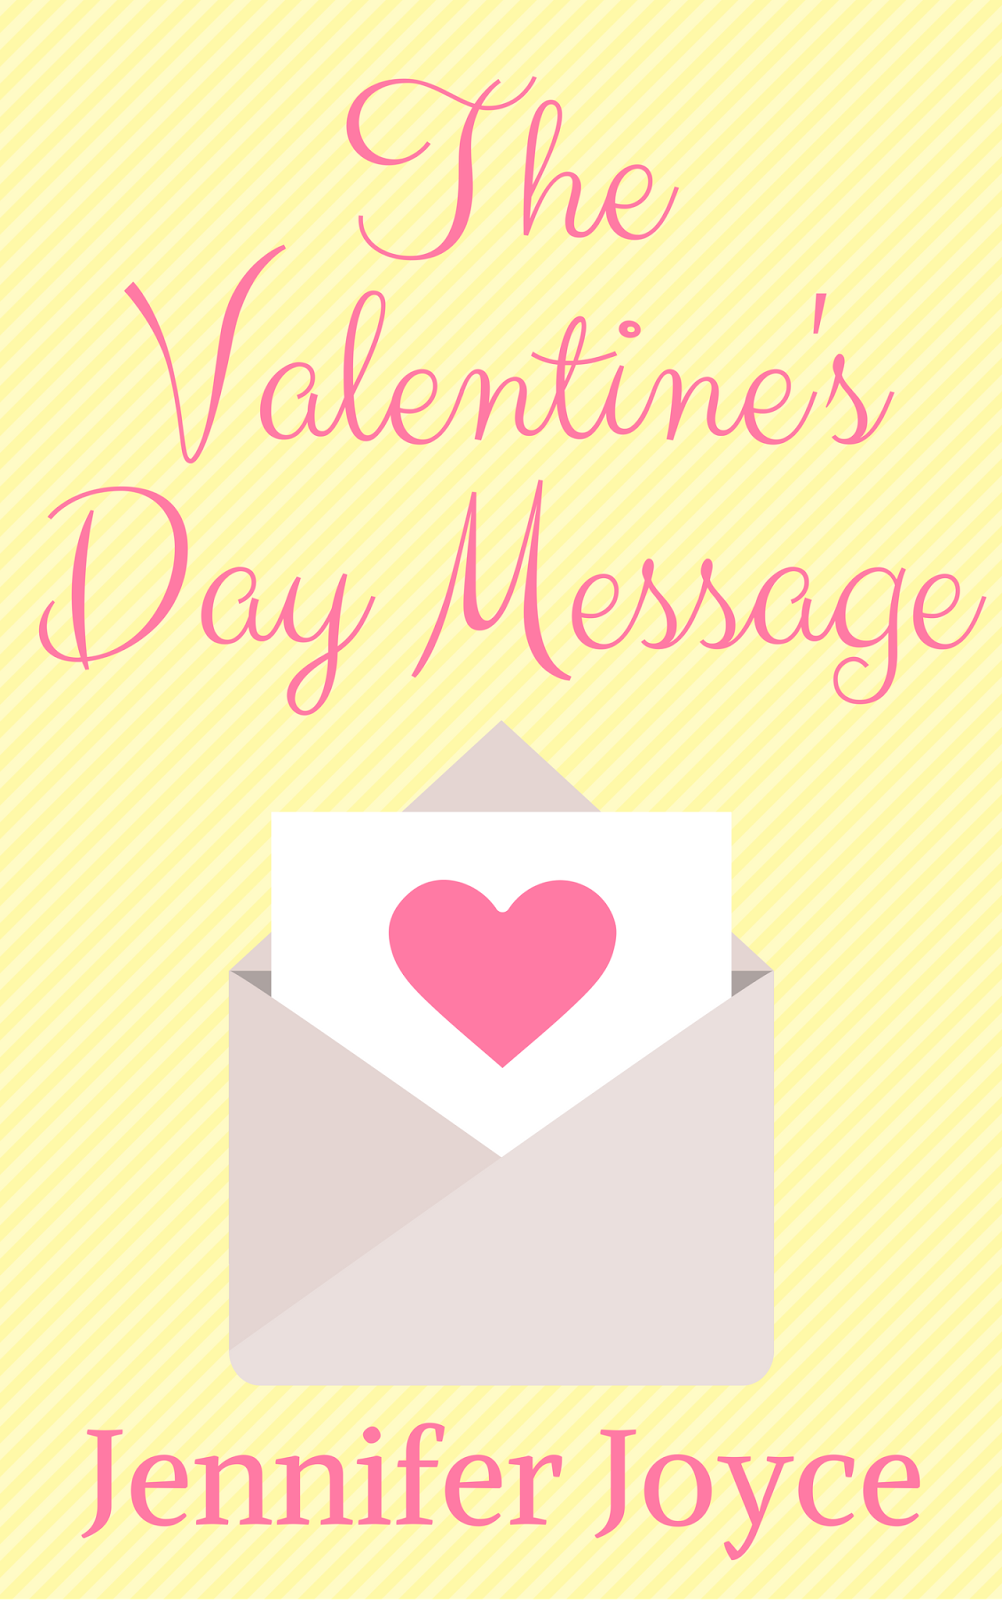 Jennifer Joyce Writes: Short Story: The Valentine's Day Message